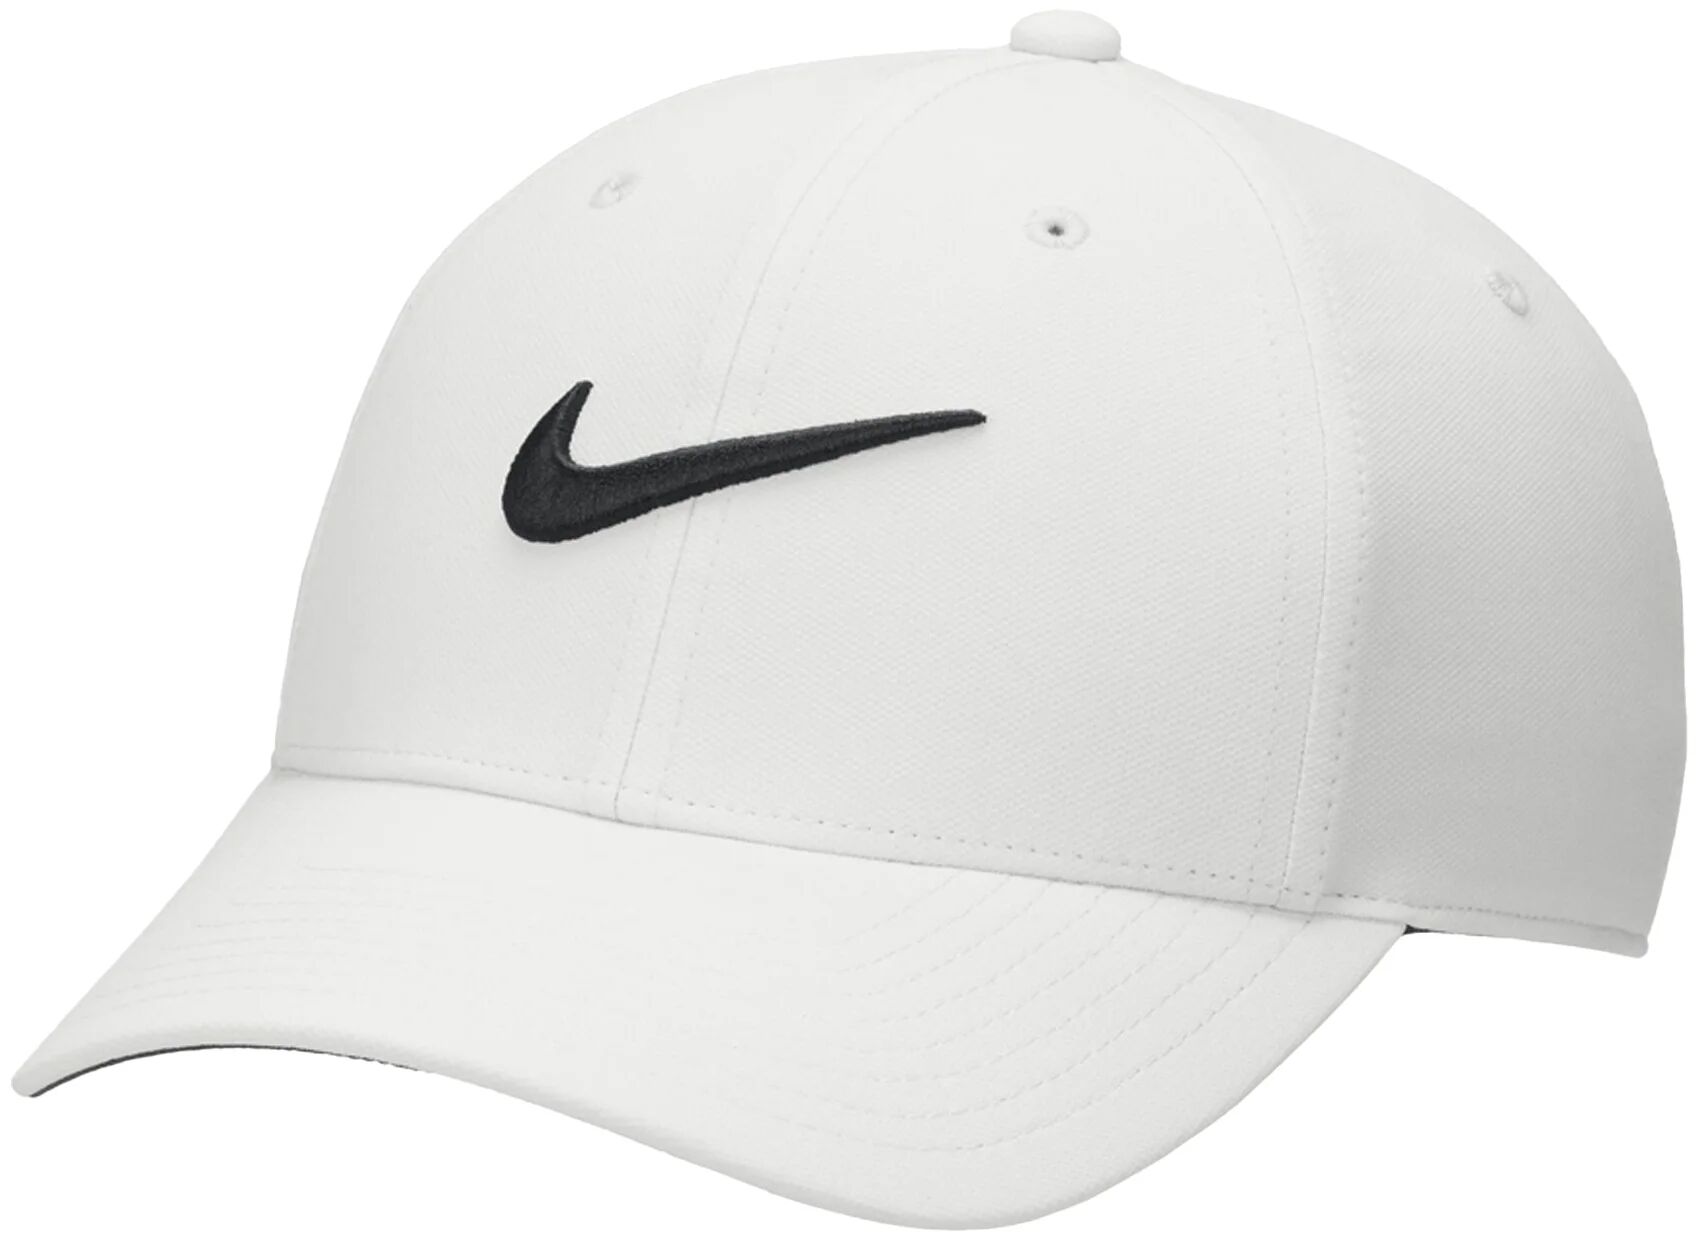 Nike Dri-FIT Club Structured Swoosh Men's Golf Hat - Grey, Size: Small/Medium